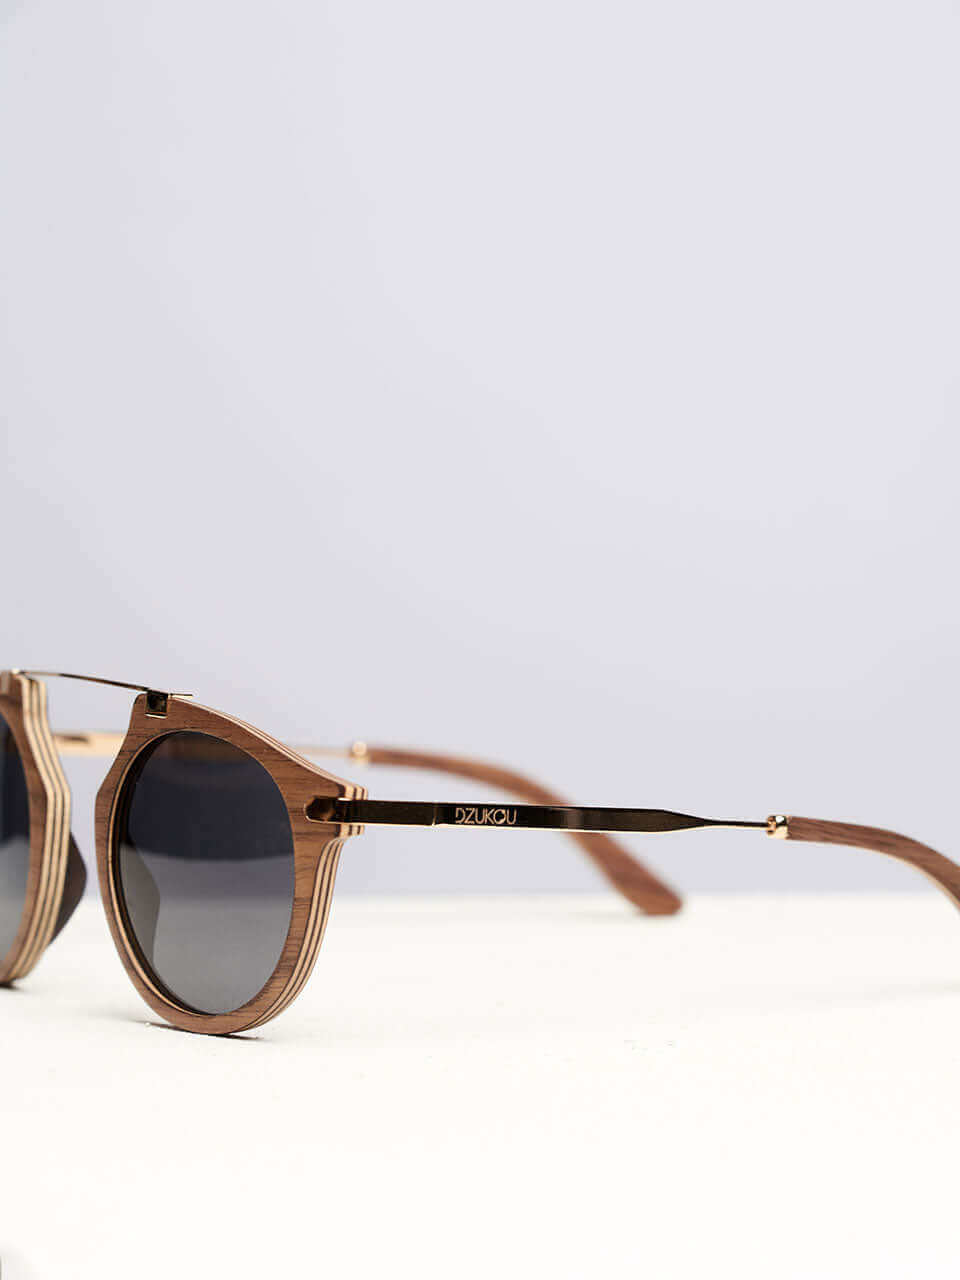 Santa Monica - Wooden Sunglasses for Women